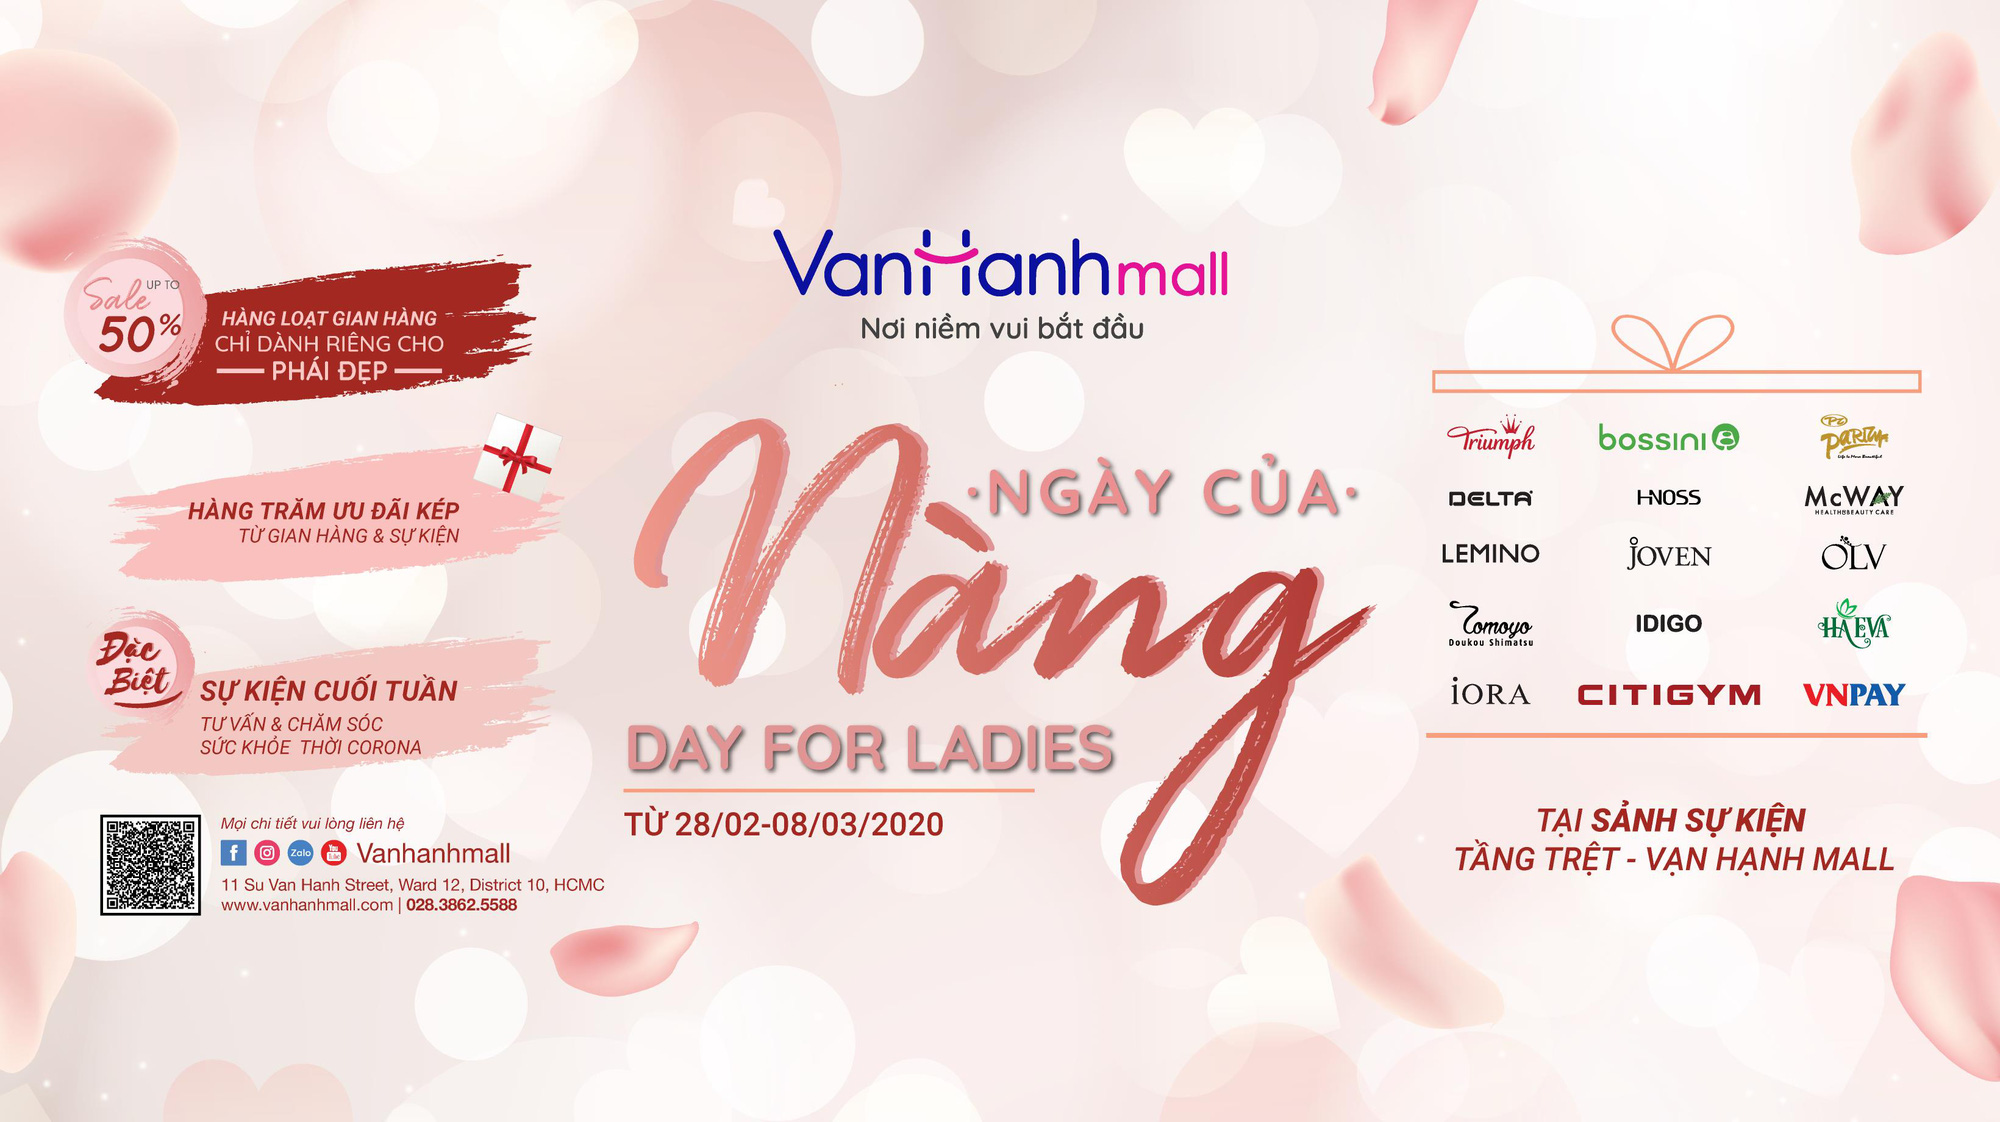 Mừng quốc tế phụ nữ, Vạn Hạnh Mall tổ chức sự kiện sale “Ngày của Nàng” - Ảnh 1.